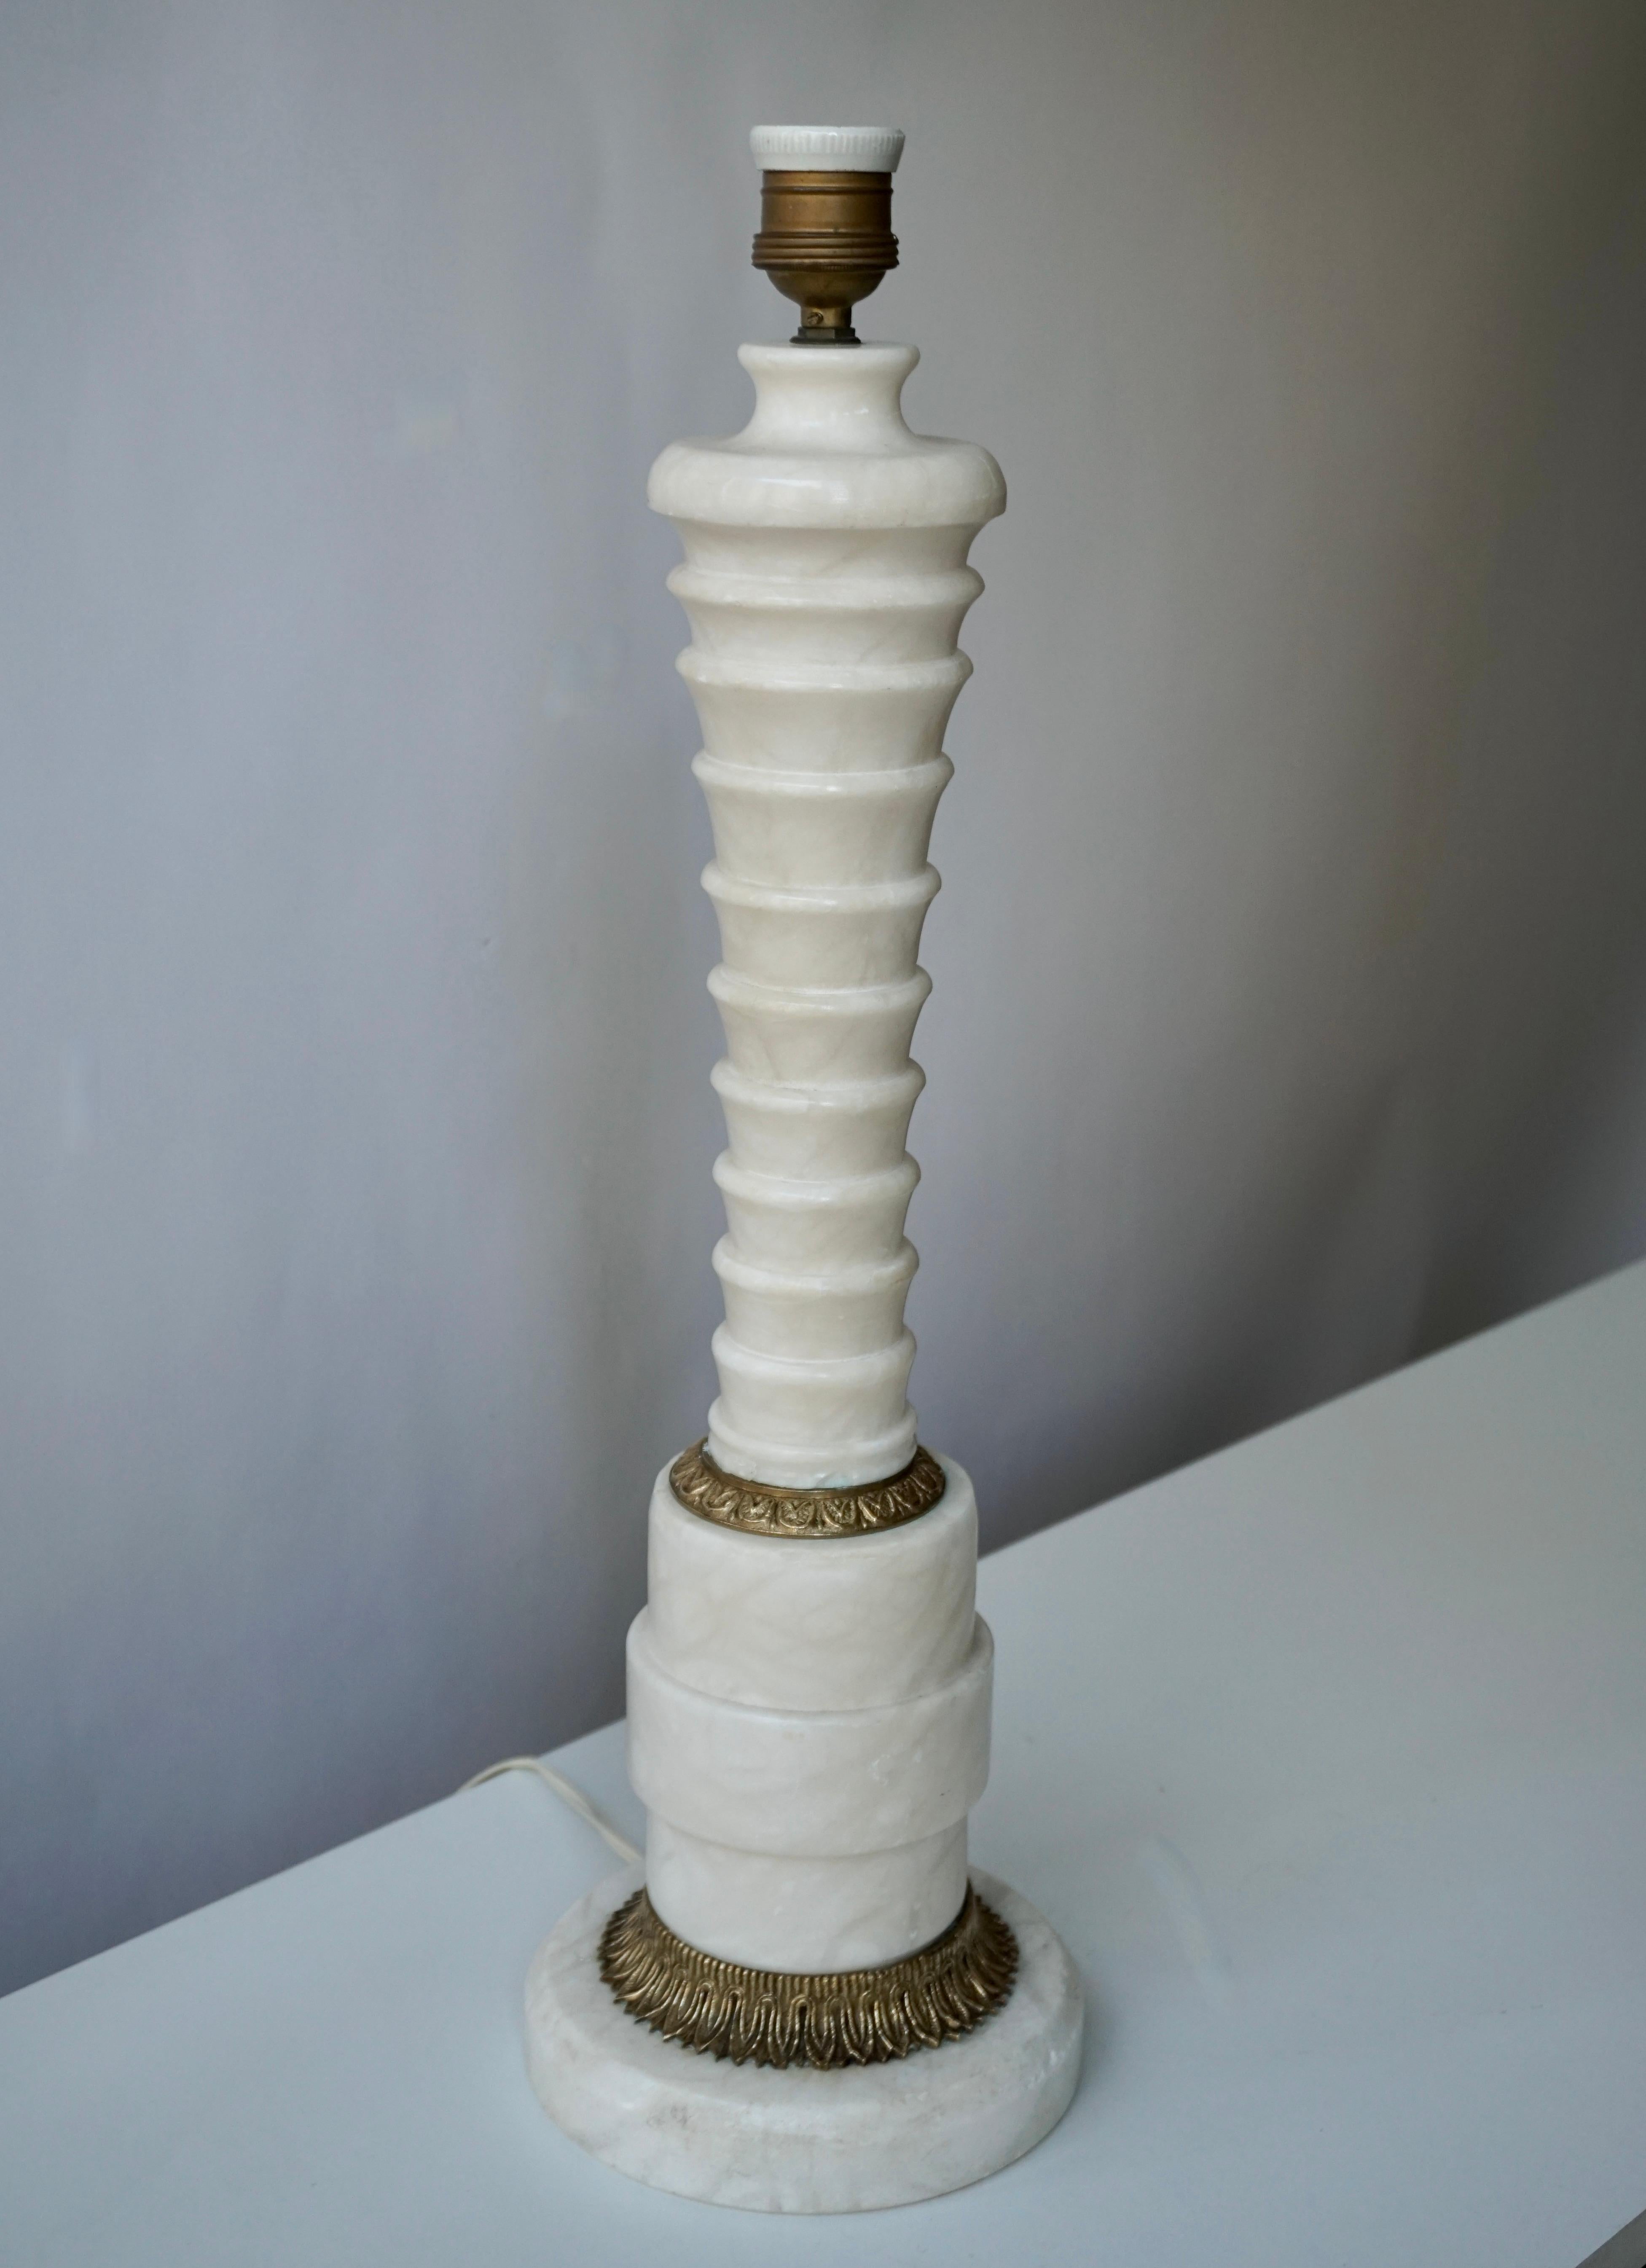 Italienische Tischlampe aus Messing und Marmor.

Maße: Durchmesser 16 cm.
Höhe 54 cm.
Gewicht 7 kg.